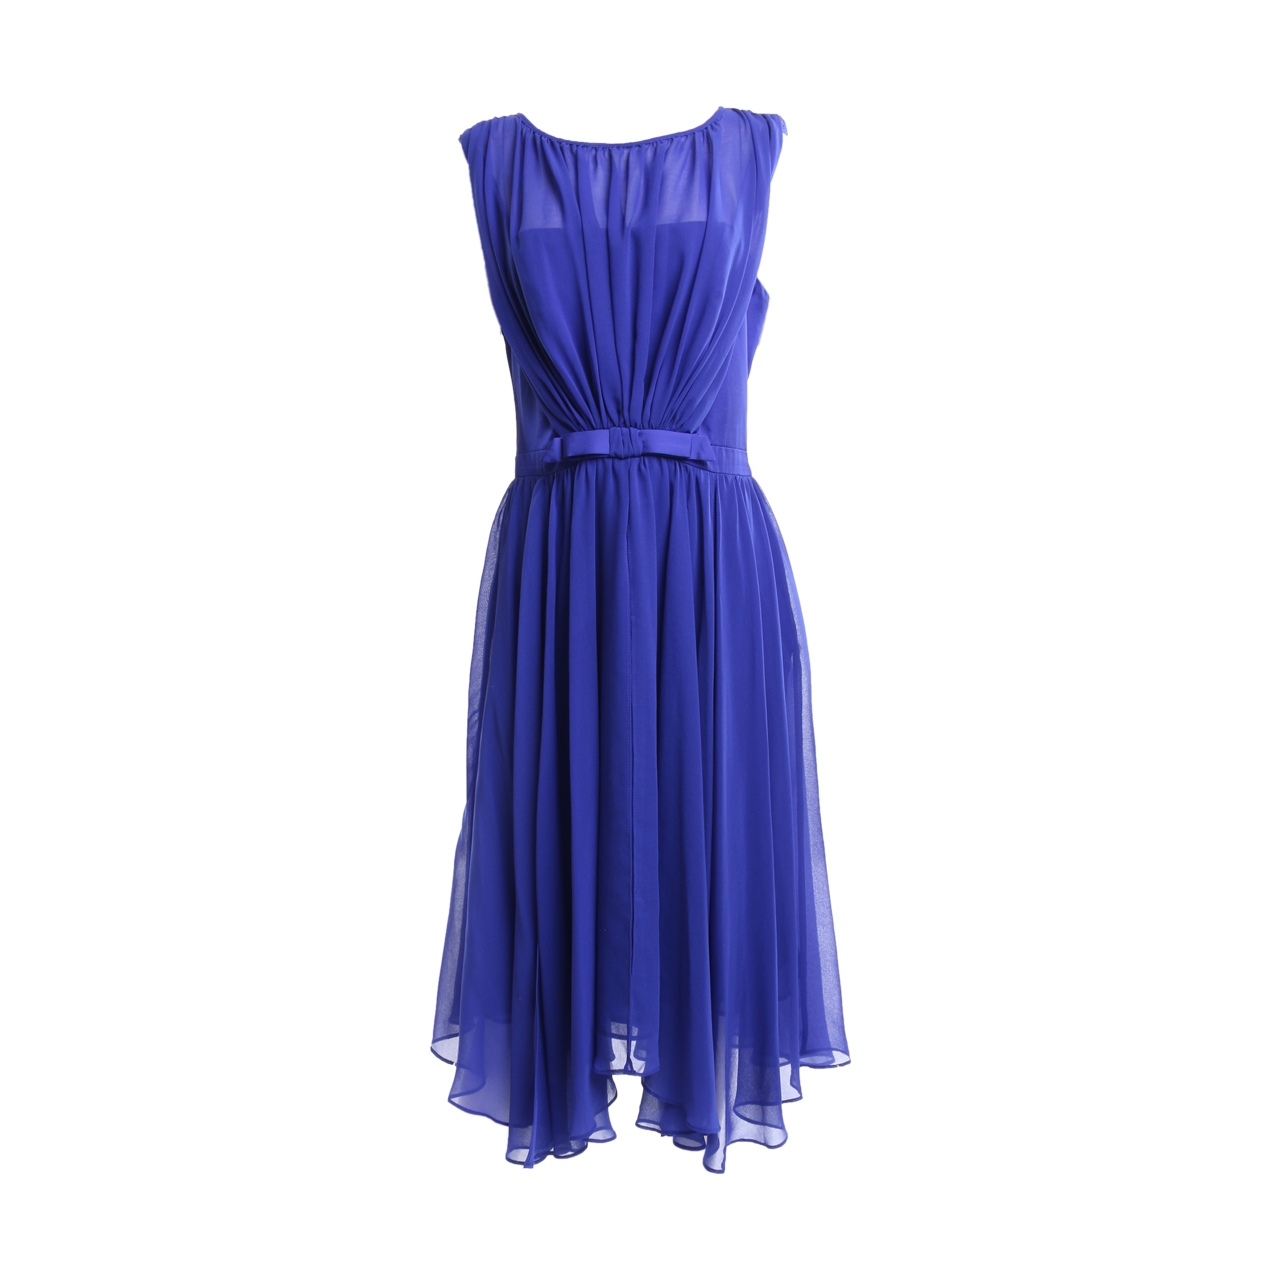 Debut Blue MIdi Dress